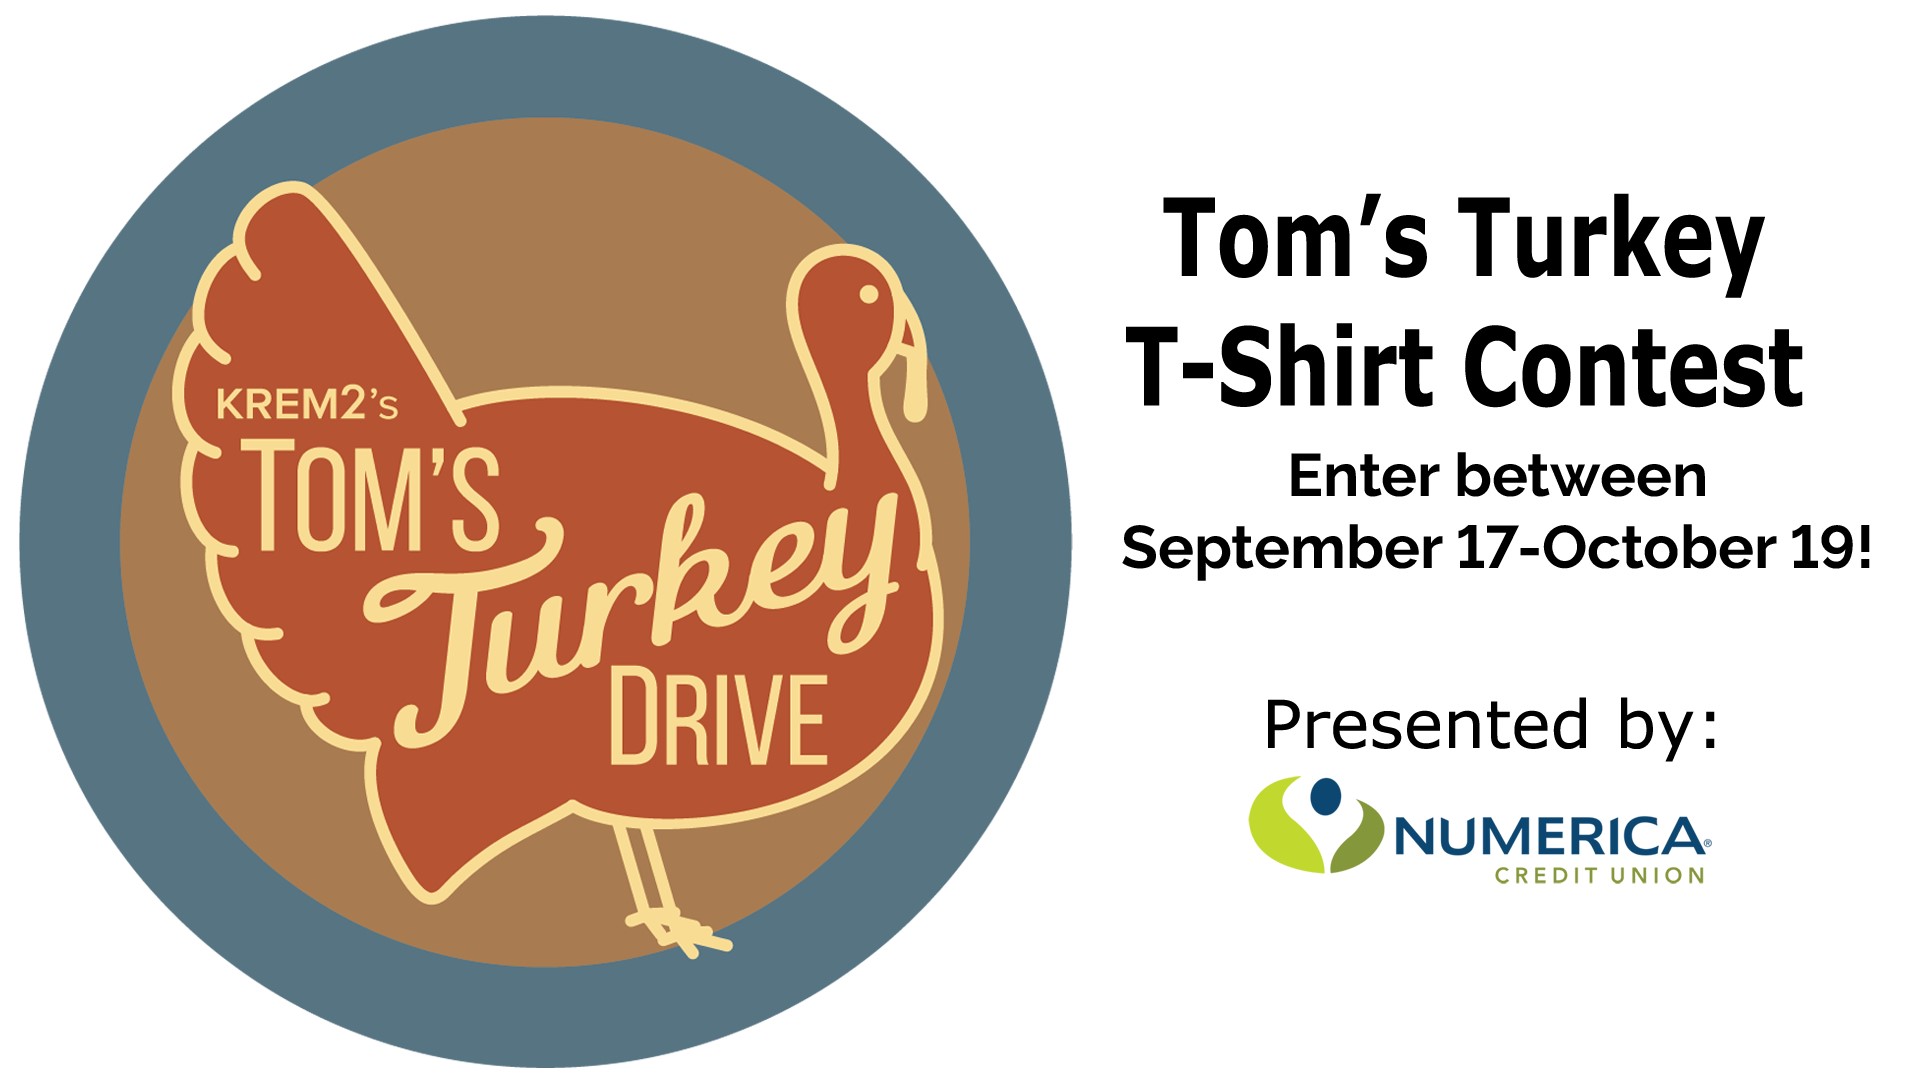 Tom's Turkey TShirt Contest 2018